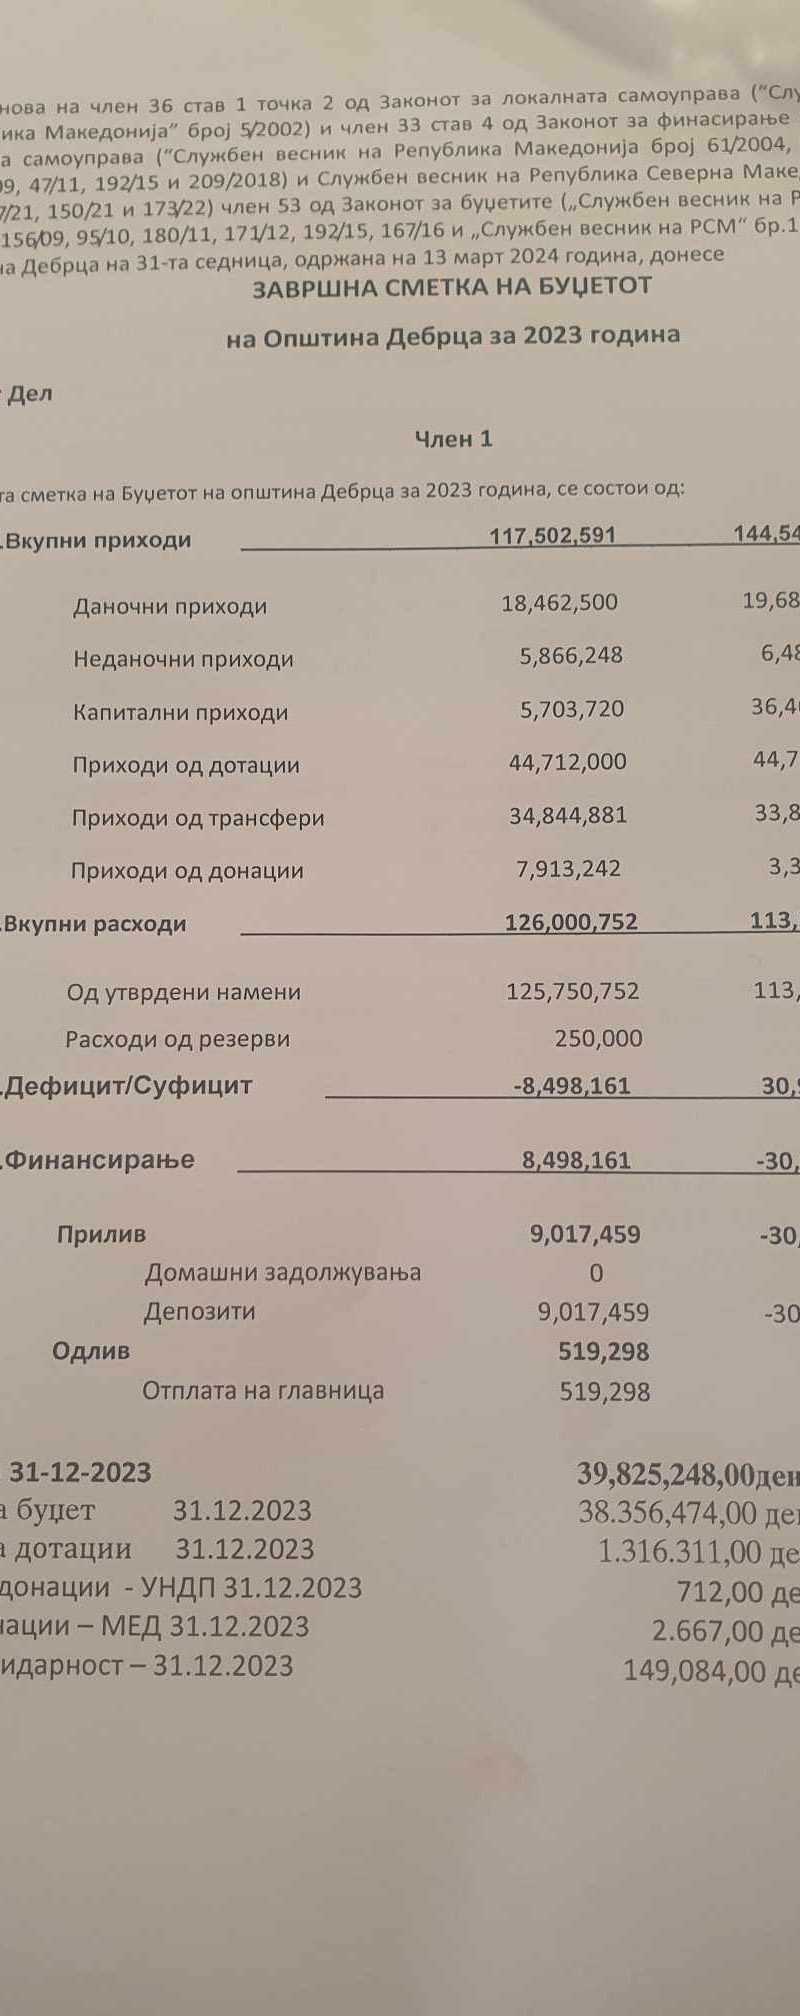 Советот на општината на 31-та седница едногласно ја усвои завршната сметка на буџетот на општина Дебрца за 2023 година.